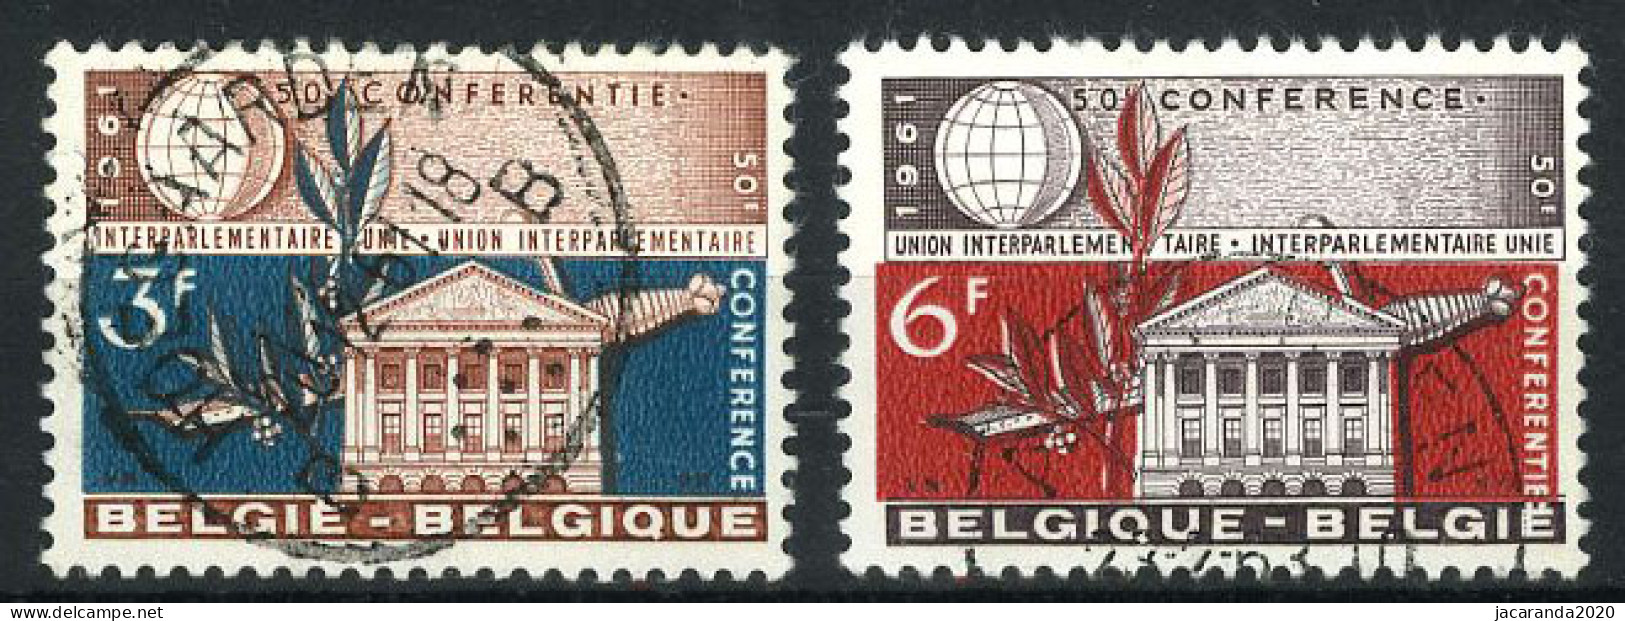 België 1191/92 - Interparlementaire Unie - Gestempeld - Oblitéré - Used - Oblitérés